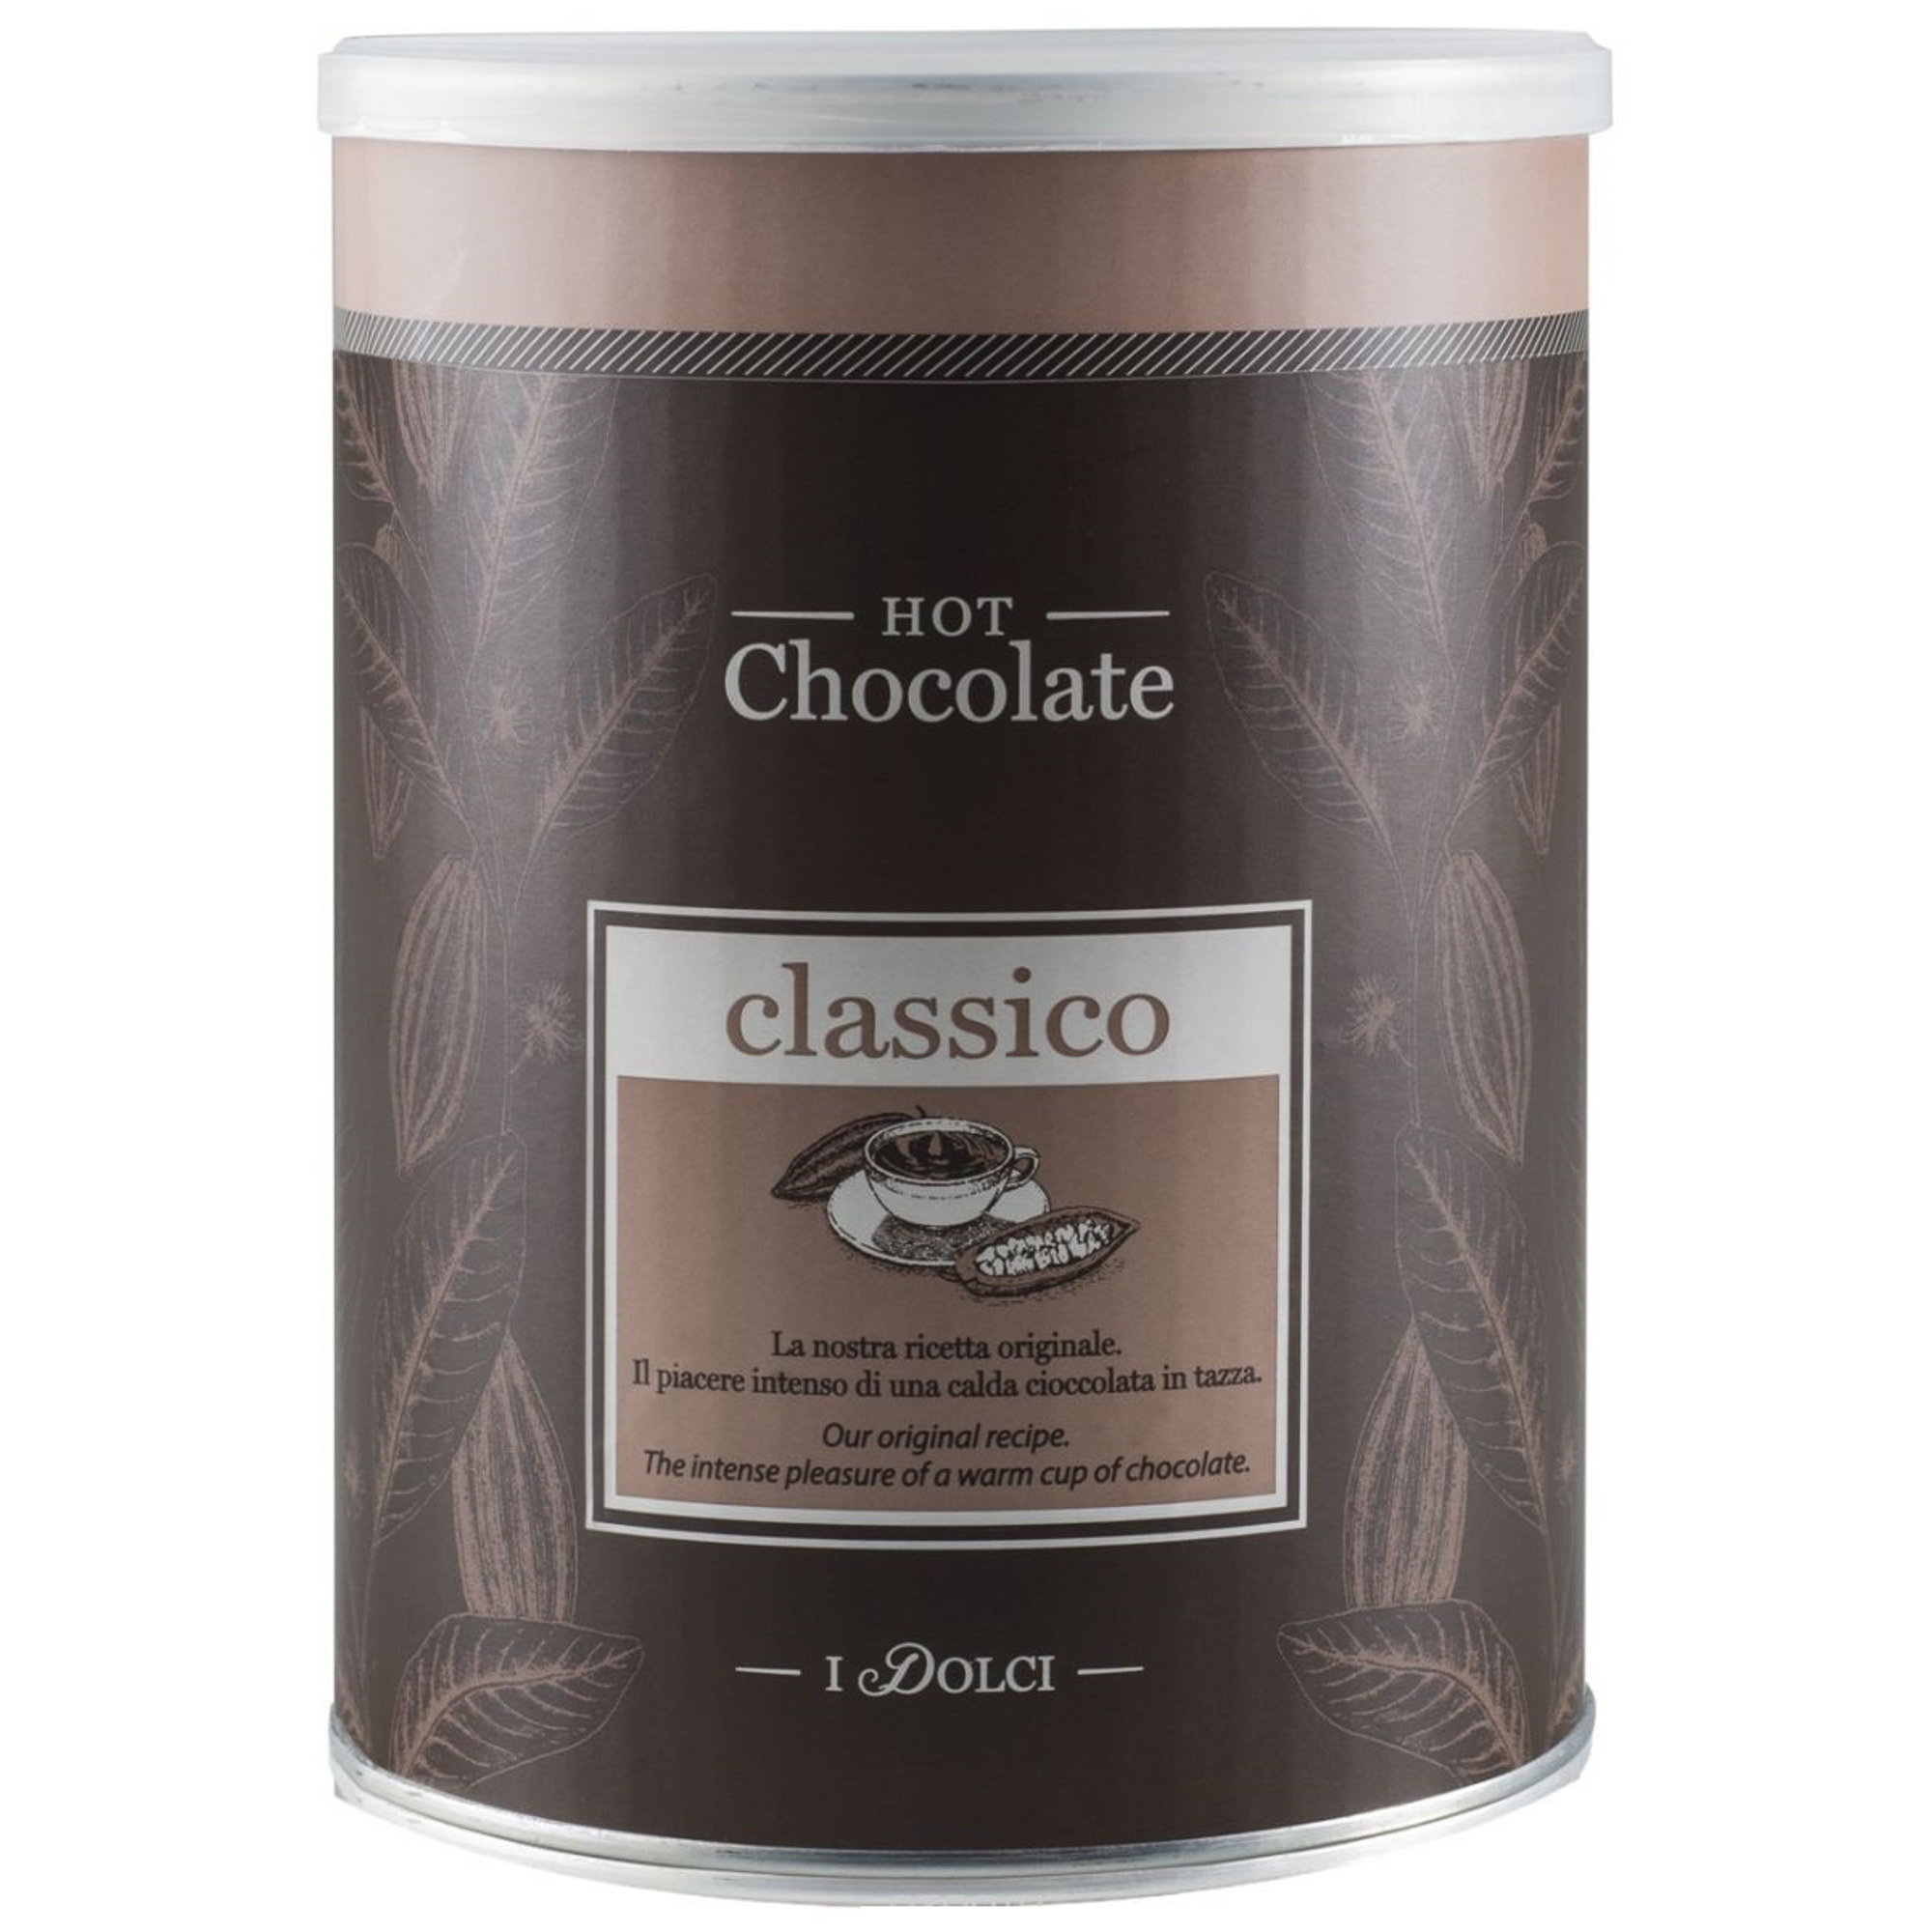 Горячий шоколад Diemme Caffe Classic 1 кг горячий шоколад boston в банке 1 кг